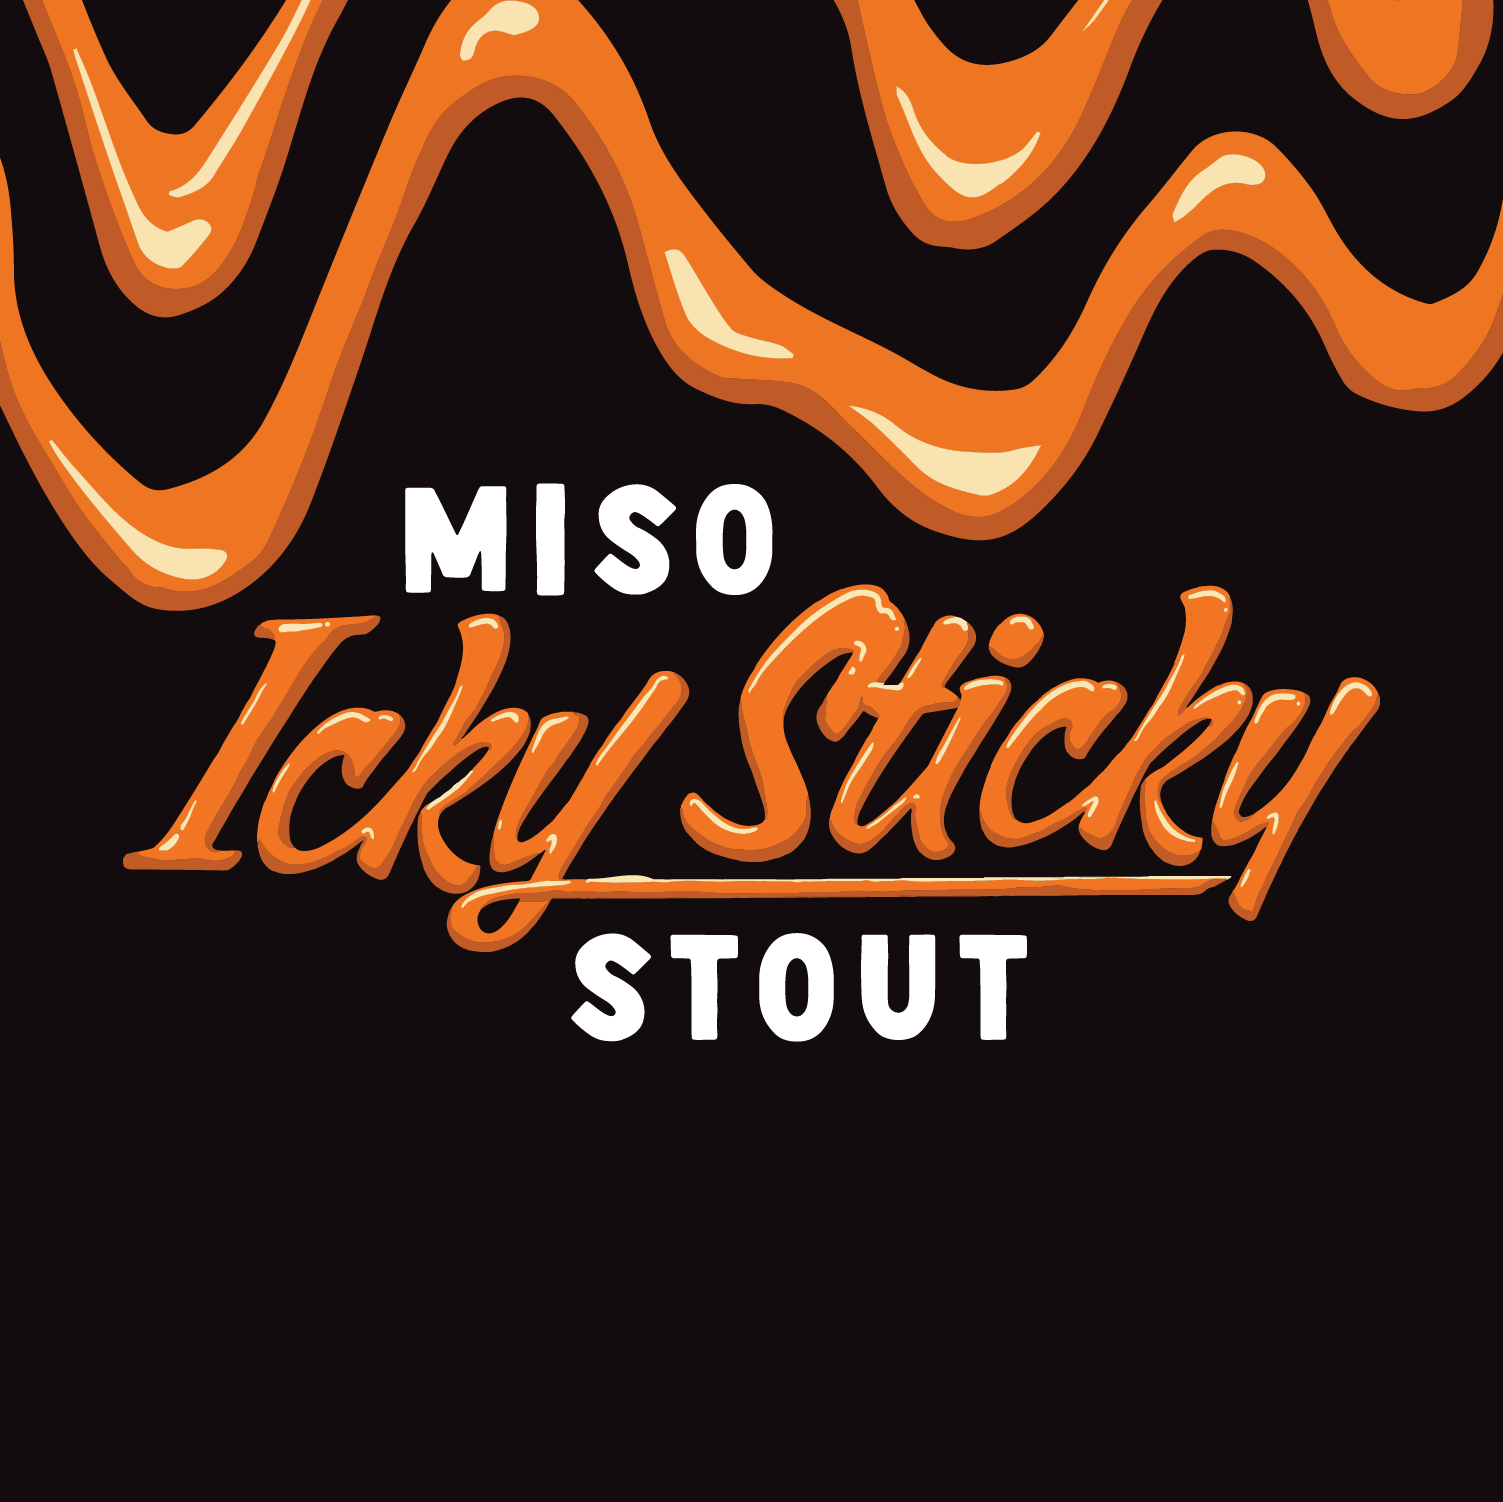 Miso Icky Sticky Stout